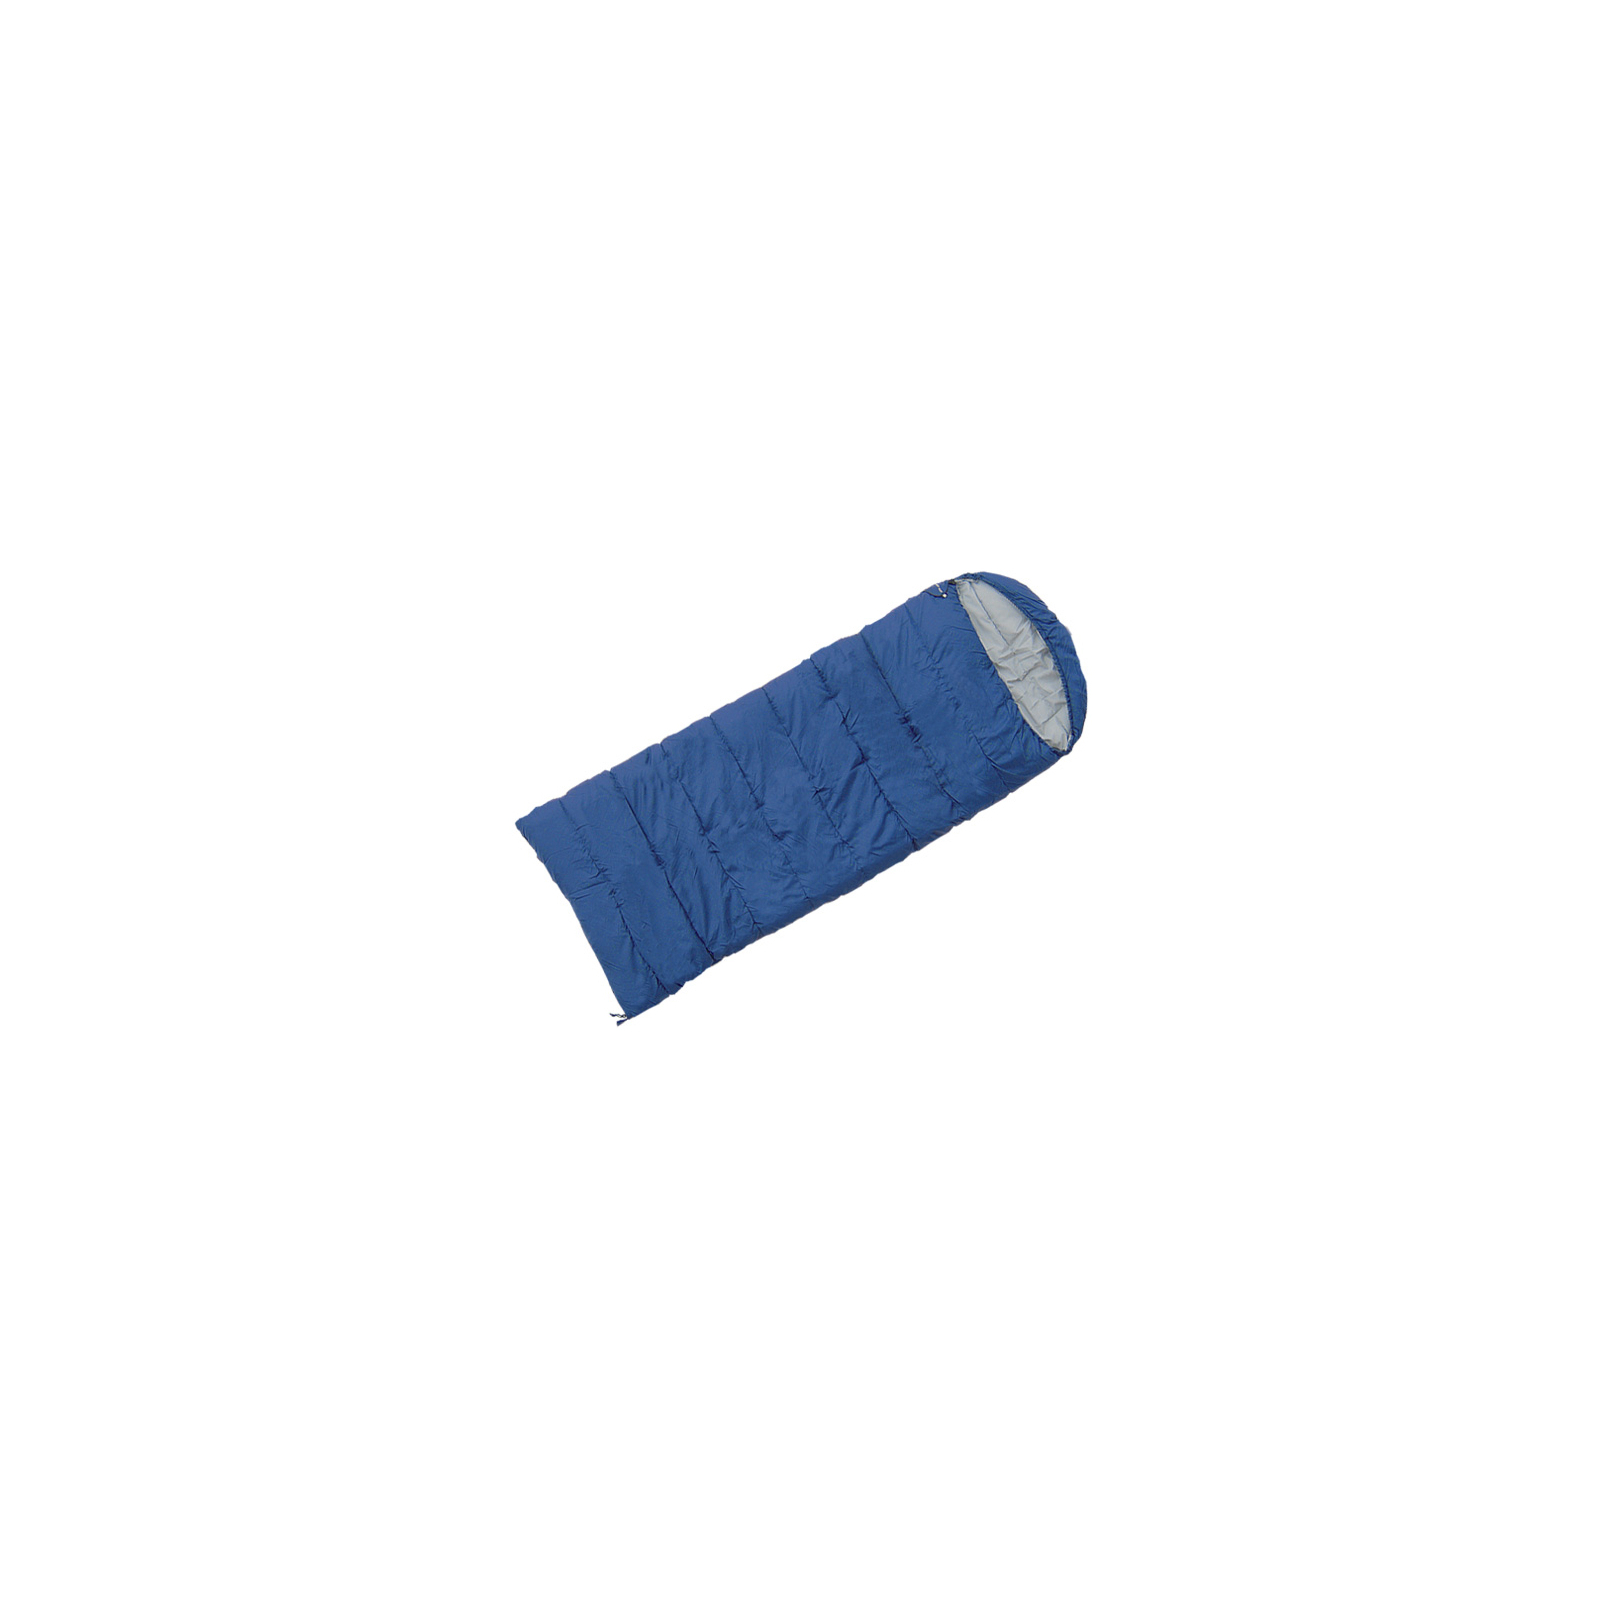 Спальный мешок Terra Incognita Asleep 200 WIDE L dark blue (4823081502258)